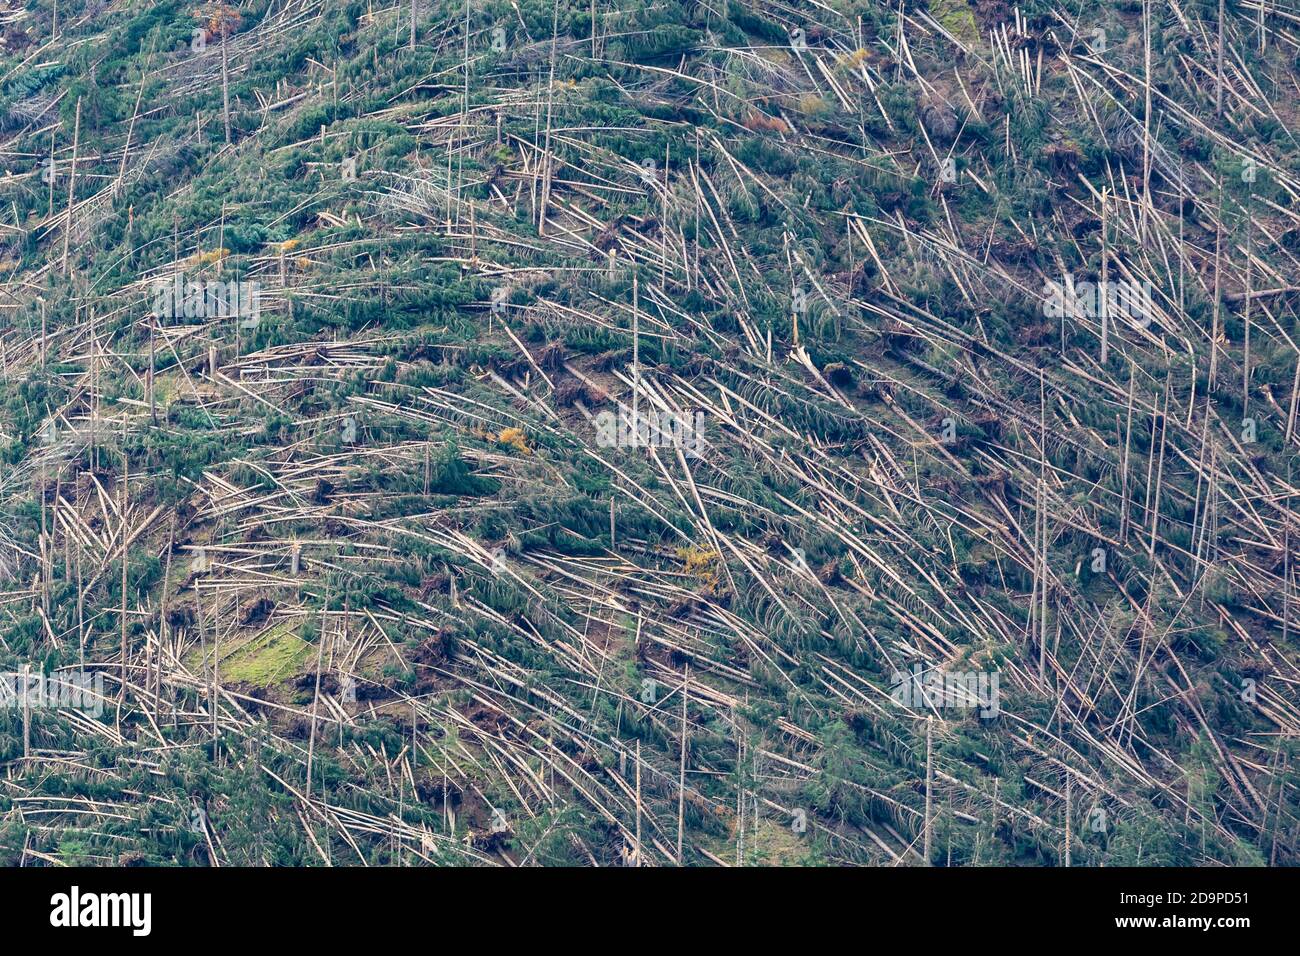 Zerschmetterte Bäume und gerodete Wälder nach dem Durchgang des Vaia Sturms über den Dolomiten, Herbst 2018, Belluno, Venetien, Italien, Europa Stockfoto